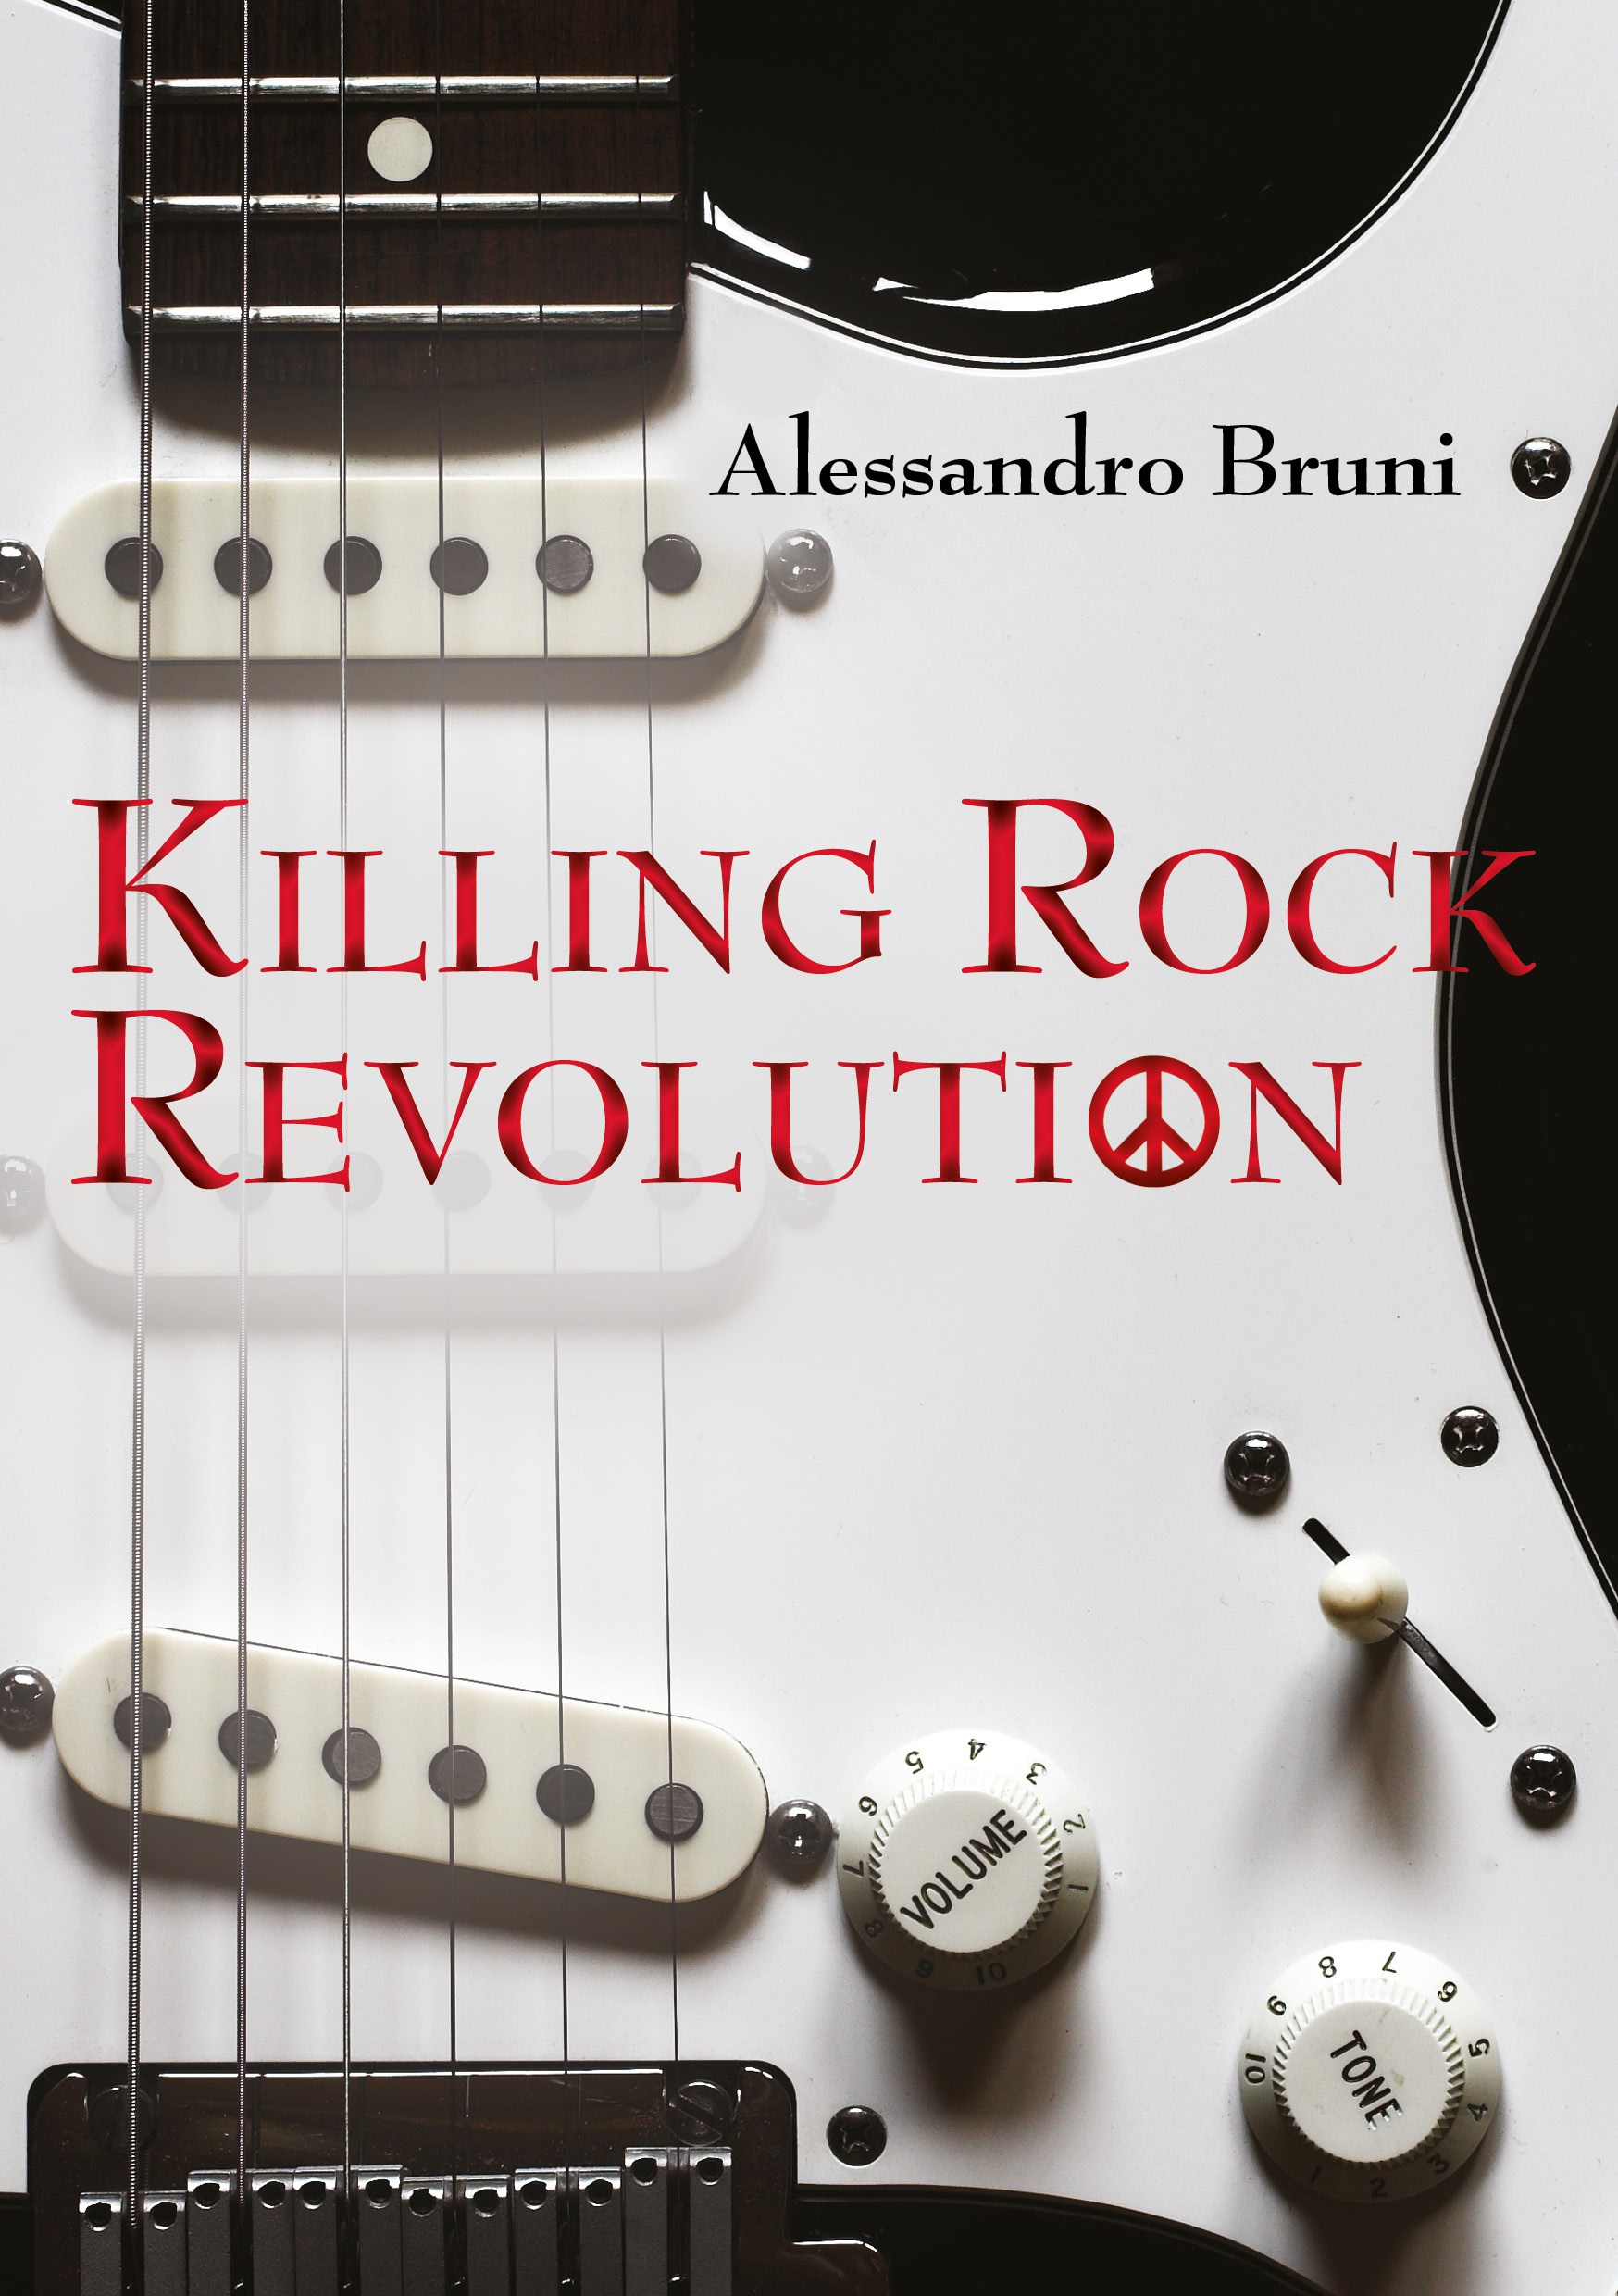 Killing rock revolution, di Alessandro Bruni